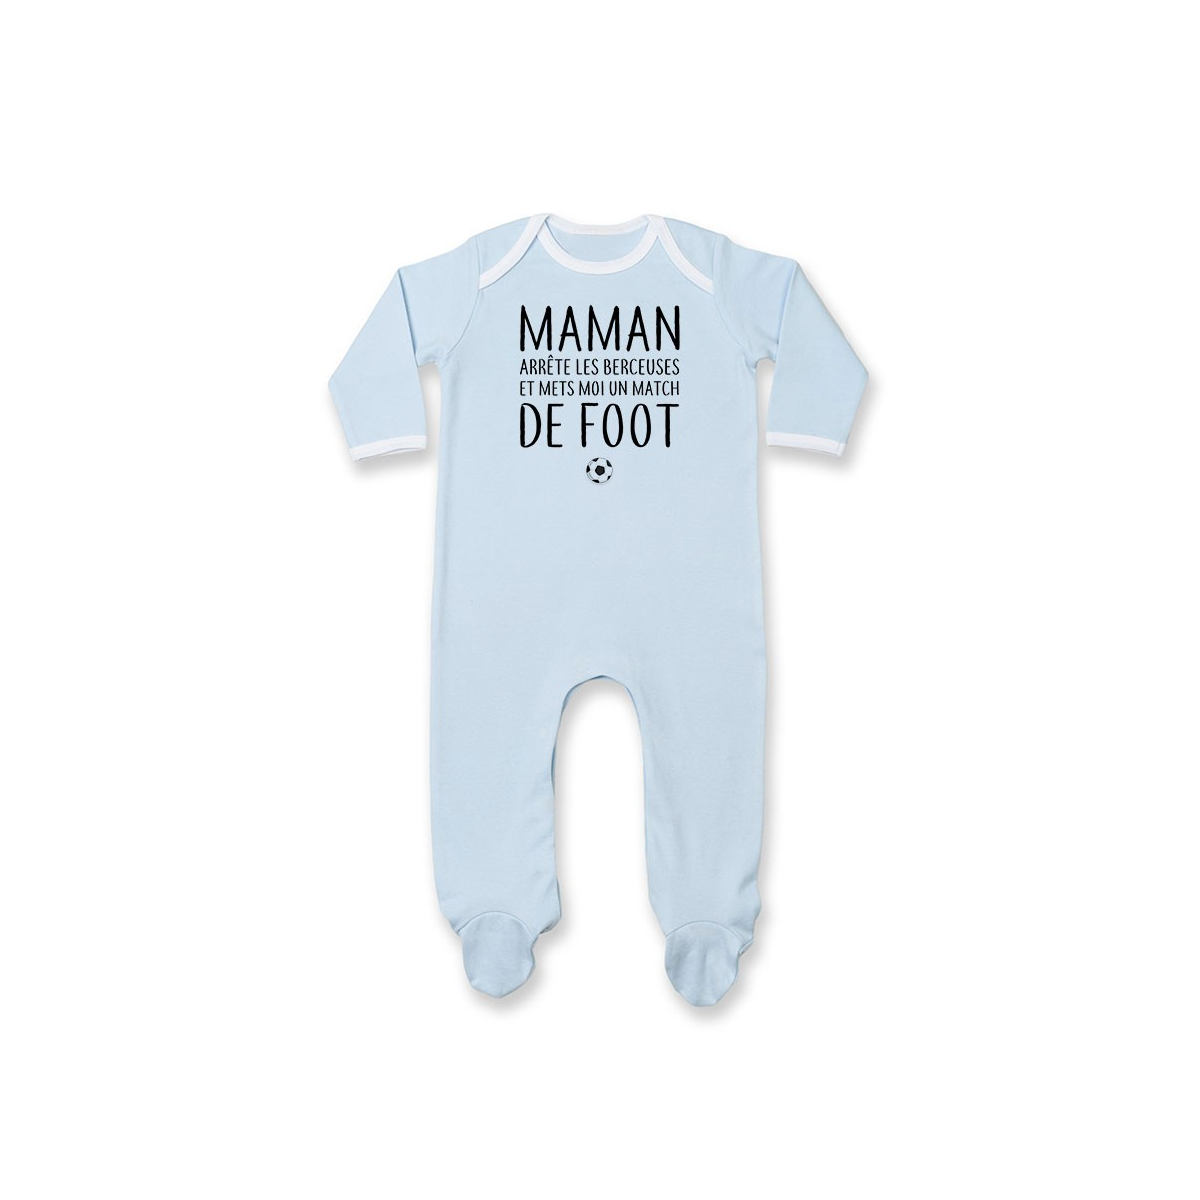 Pyjama bébé Match de foot